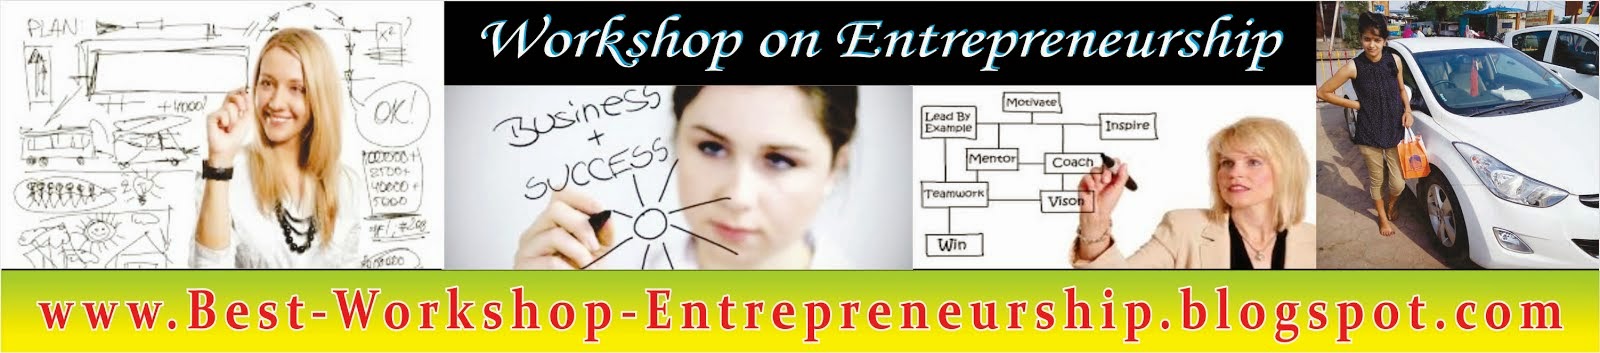 www.Best-Workshop-Entrepreneurship.blogspot.com